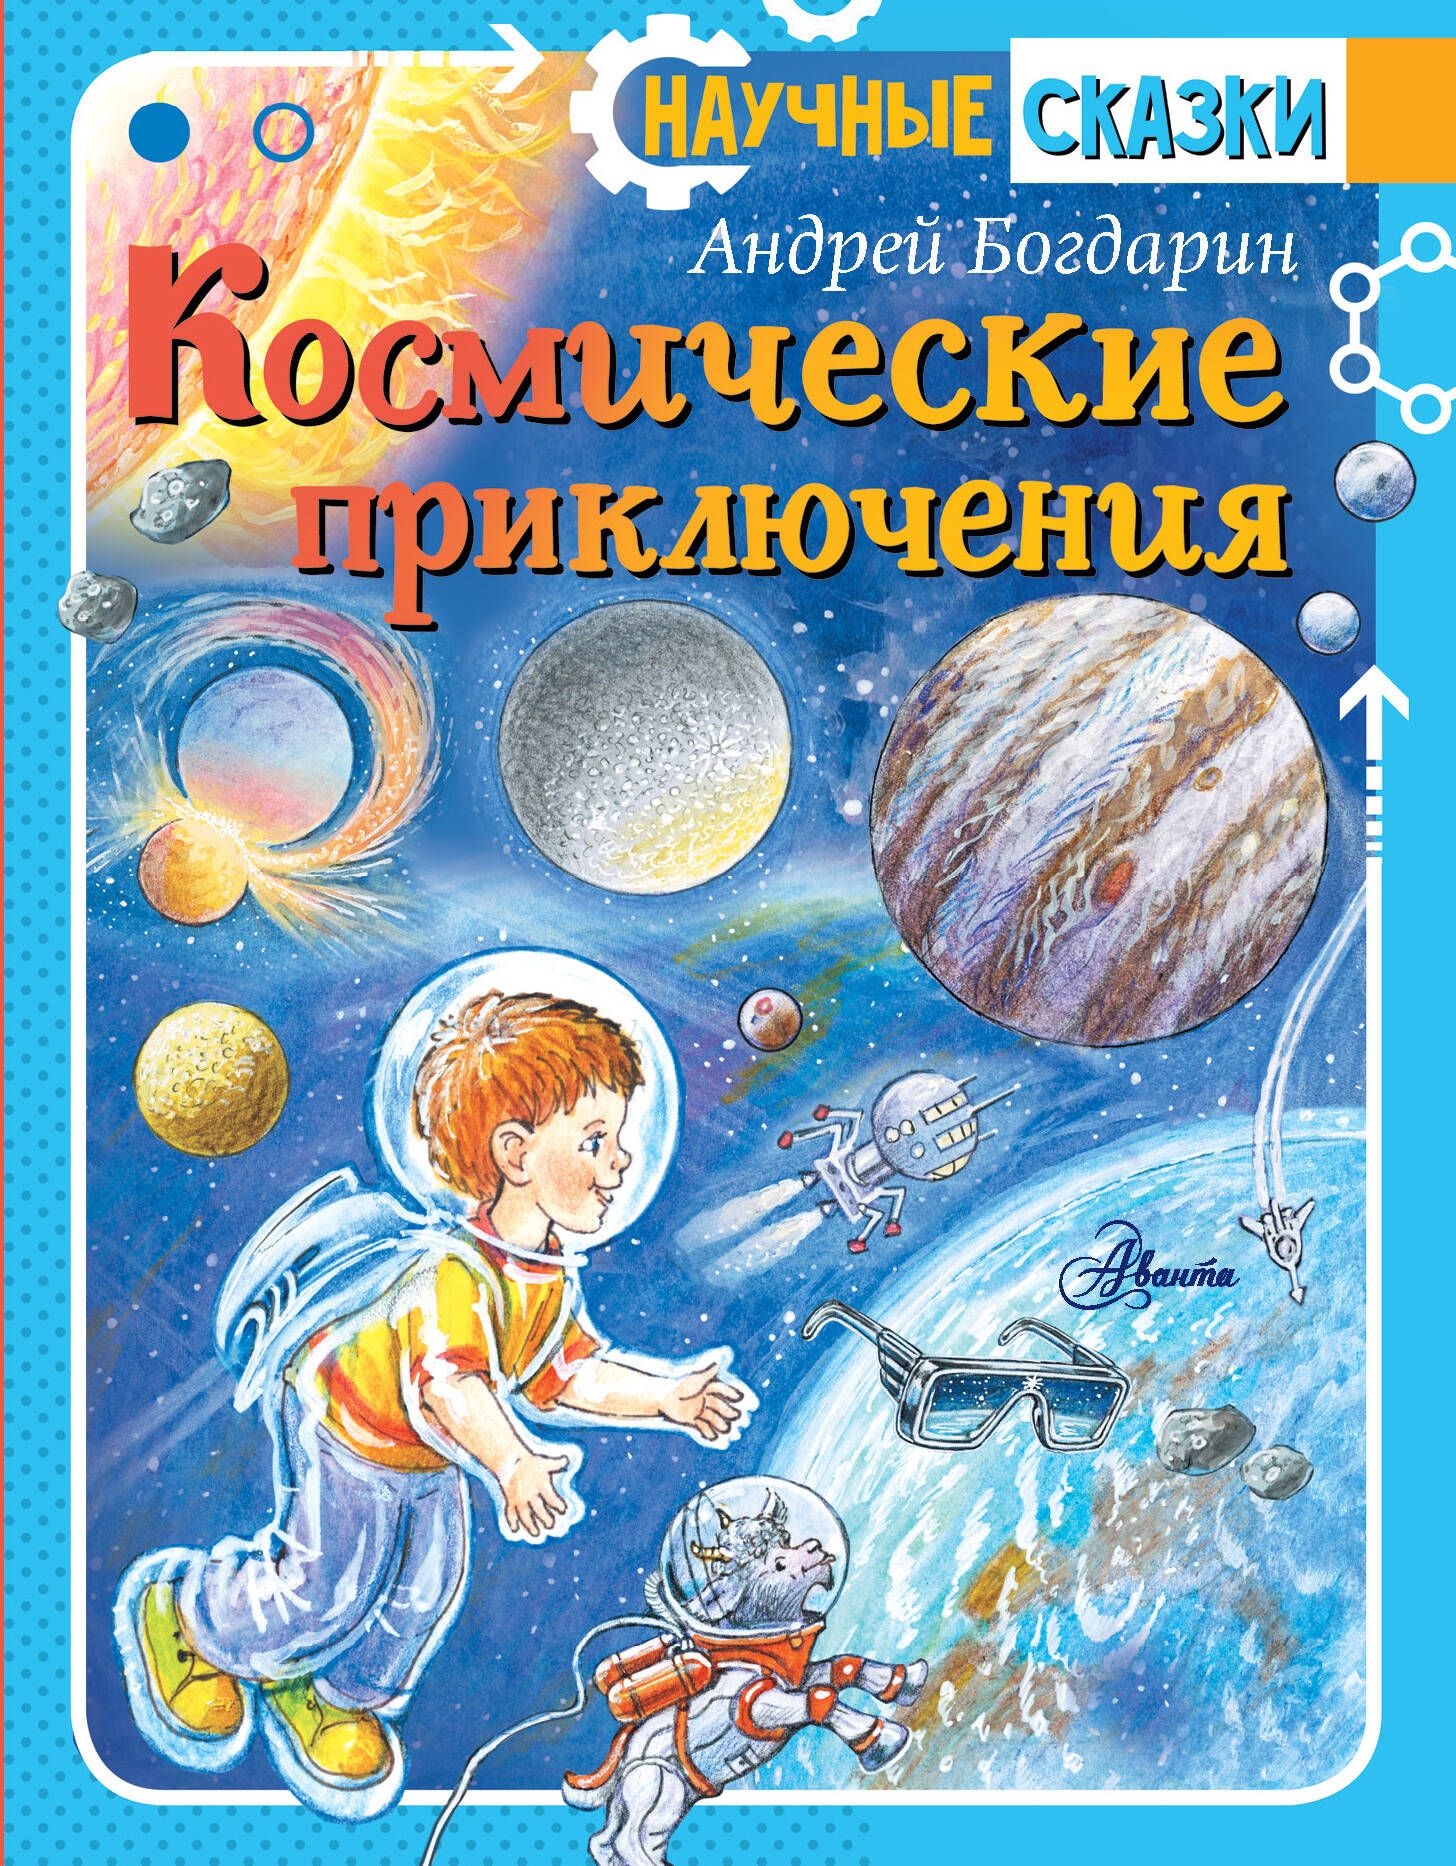 Произведения про космос. Детские книги про космос. Книга космос. Художественные книги о космосе для детей.